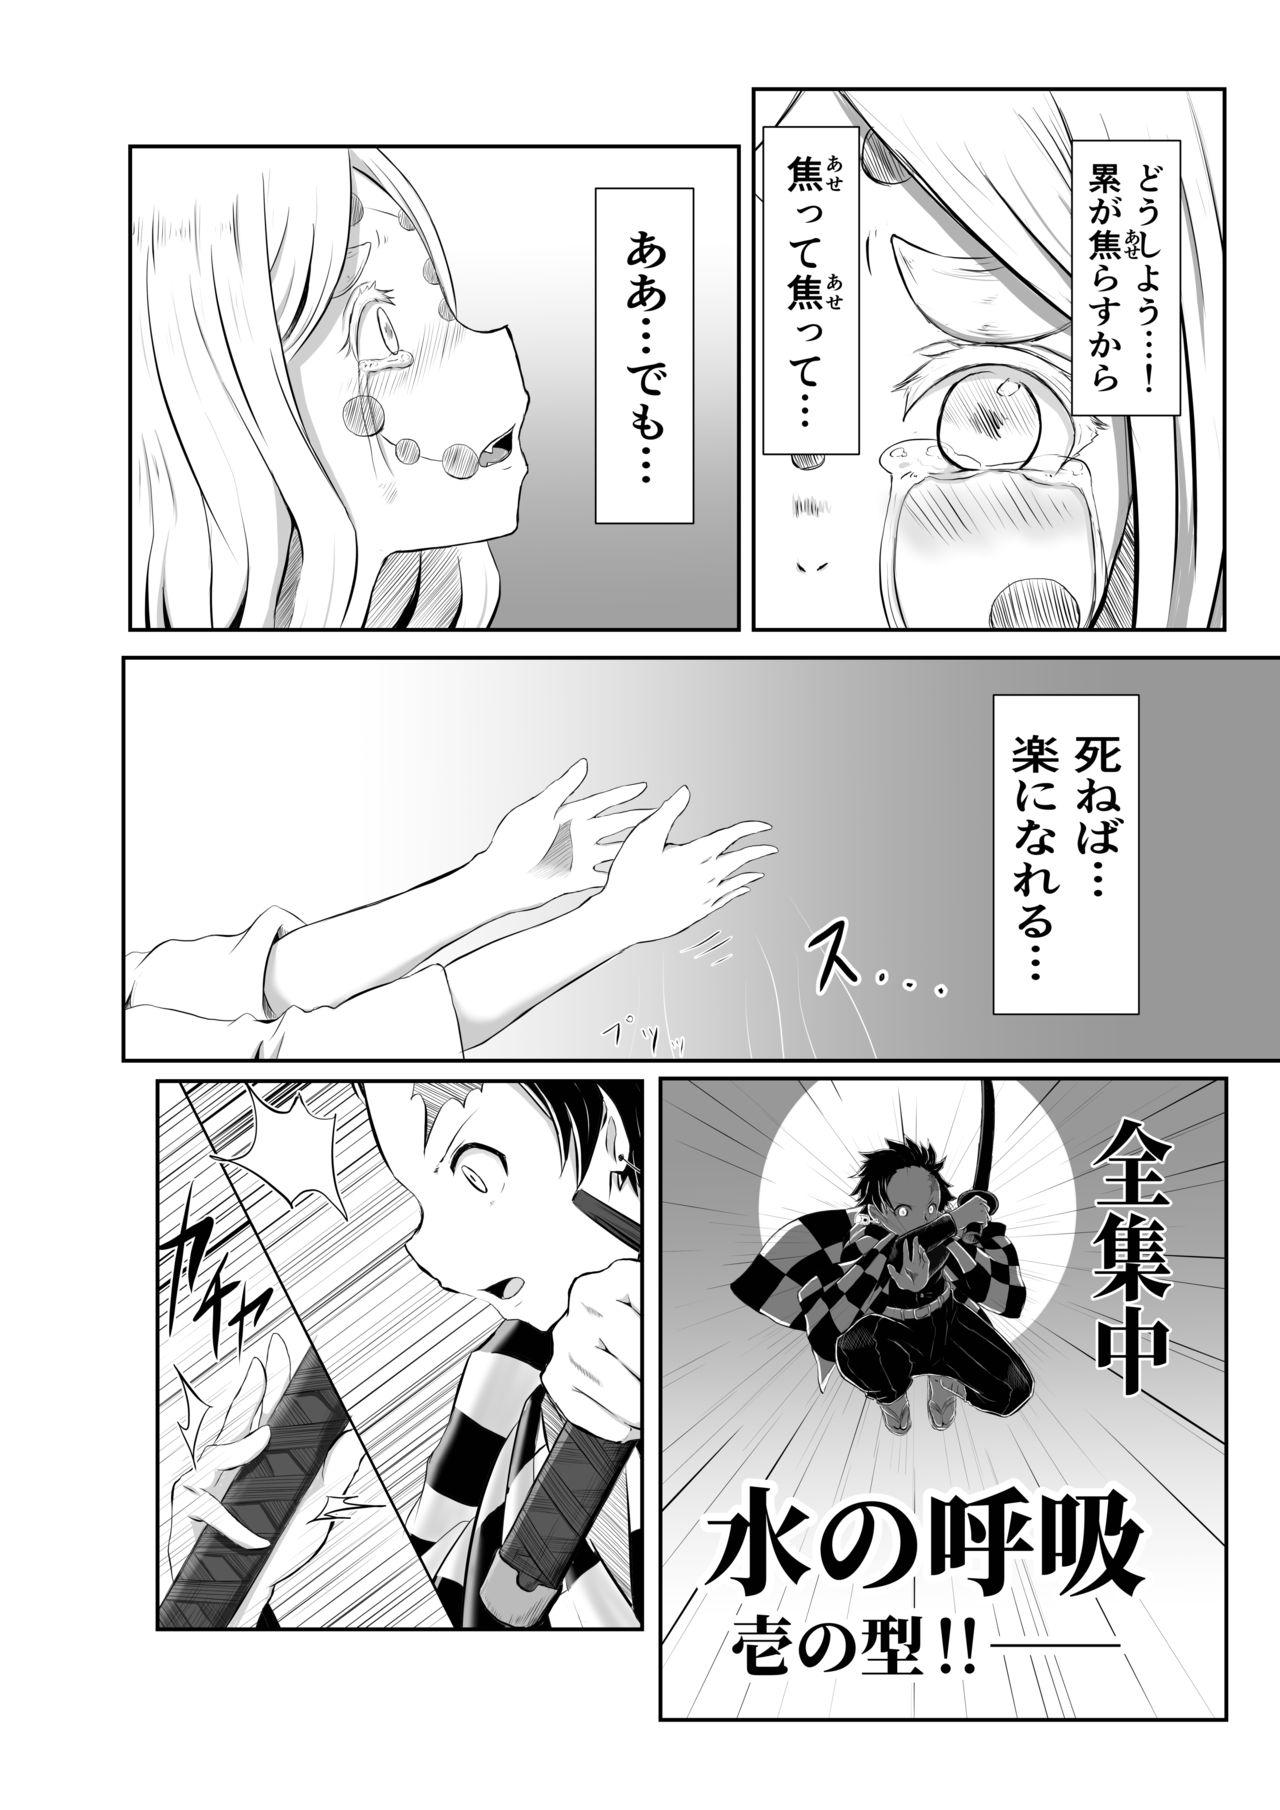 Small Tits Porn Hinokami Sex. - Kimetsu no yaiba | demon slayer Special Locations - Page 2